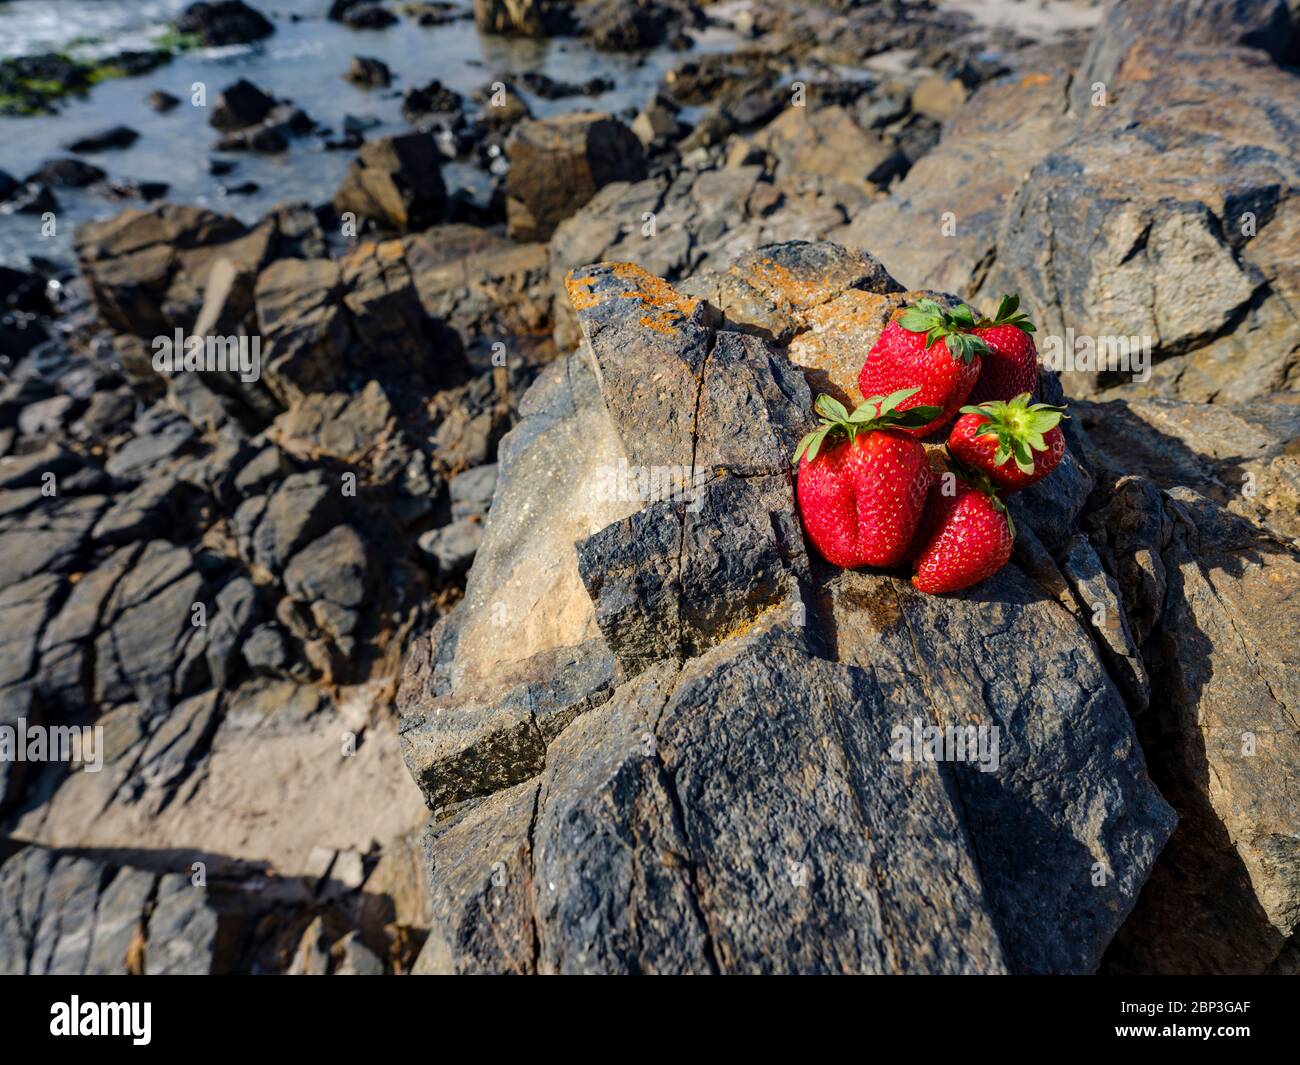 Gros plan de fraises rouges penchées contre un rocher, Porto Pino, Sant'Anna Arresi, Sardaigne, Italie Banque D'Images